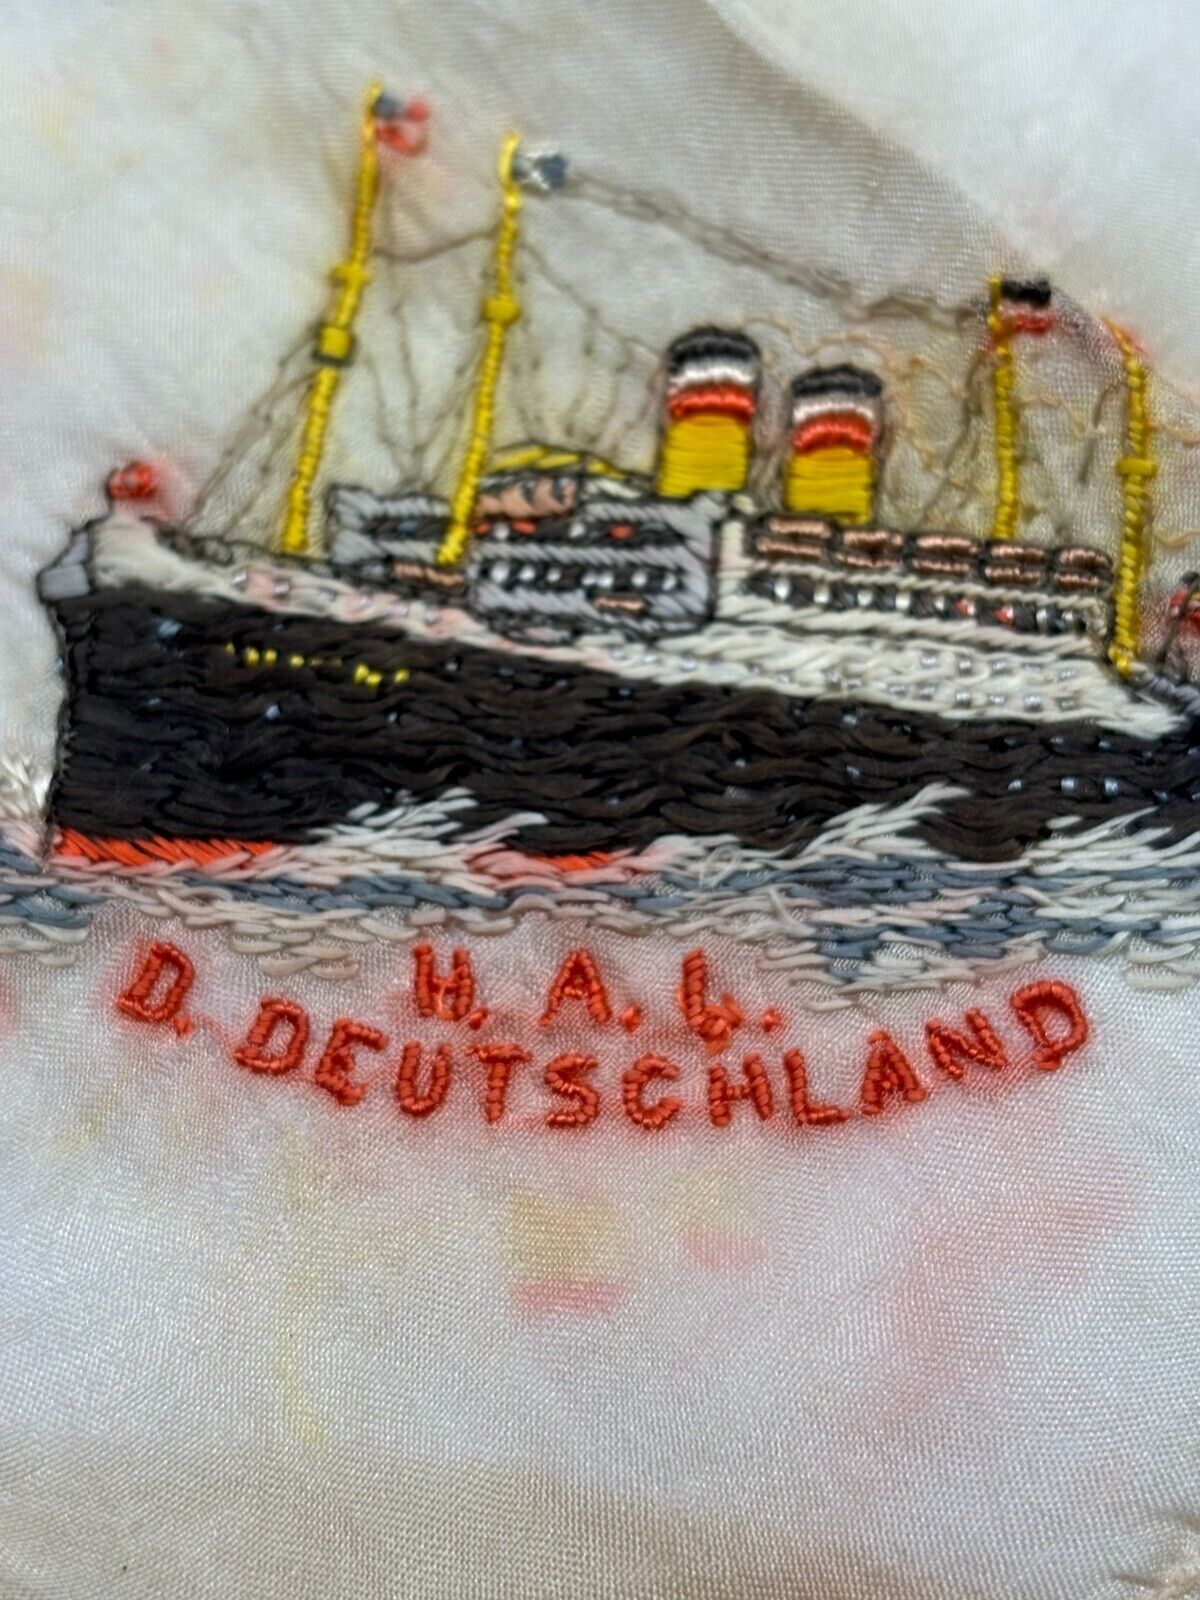 SS DEUTSCHLAND Hamburg America Line Souvenir Handkerchief